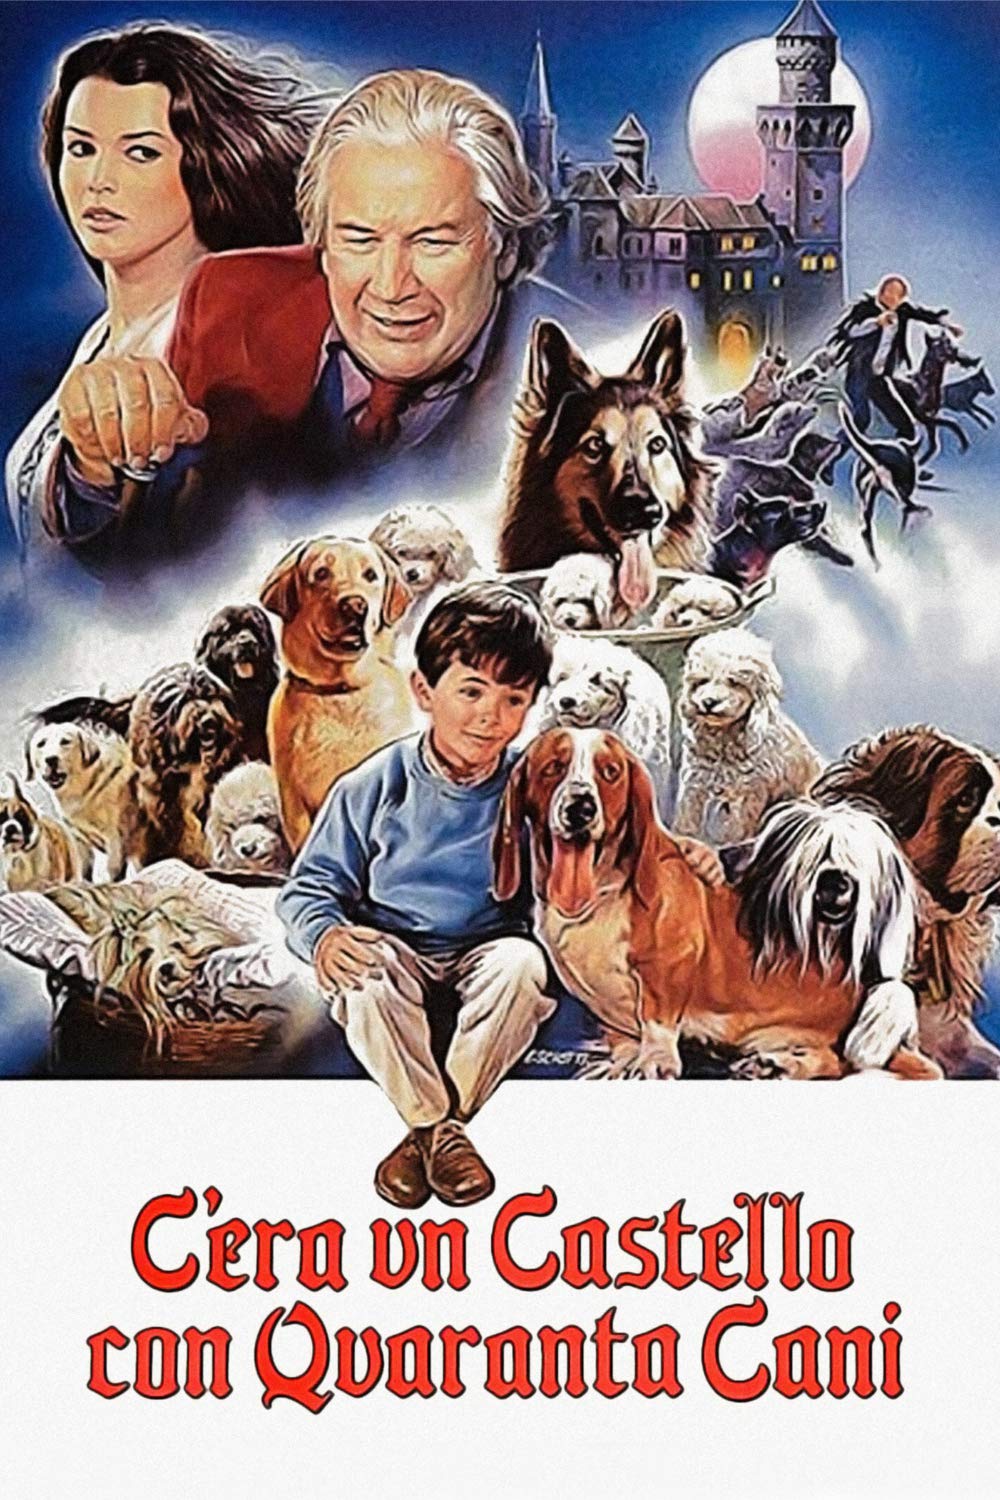 C’era un castello con quaranta cani [HD] (1990)